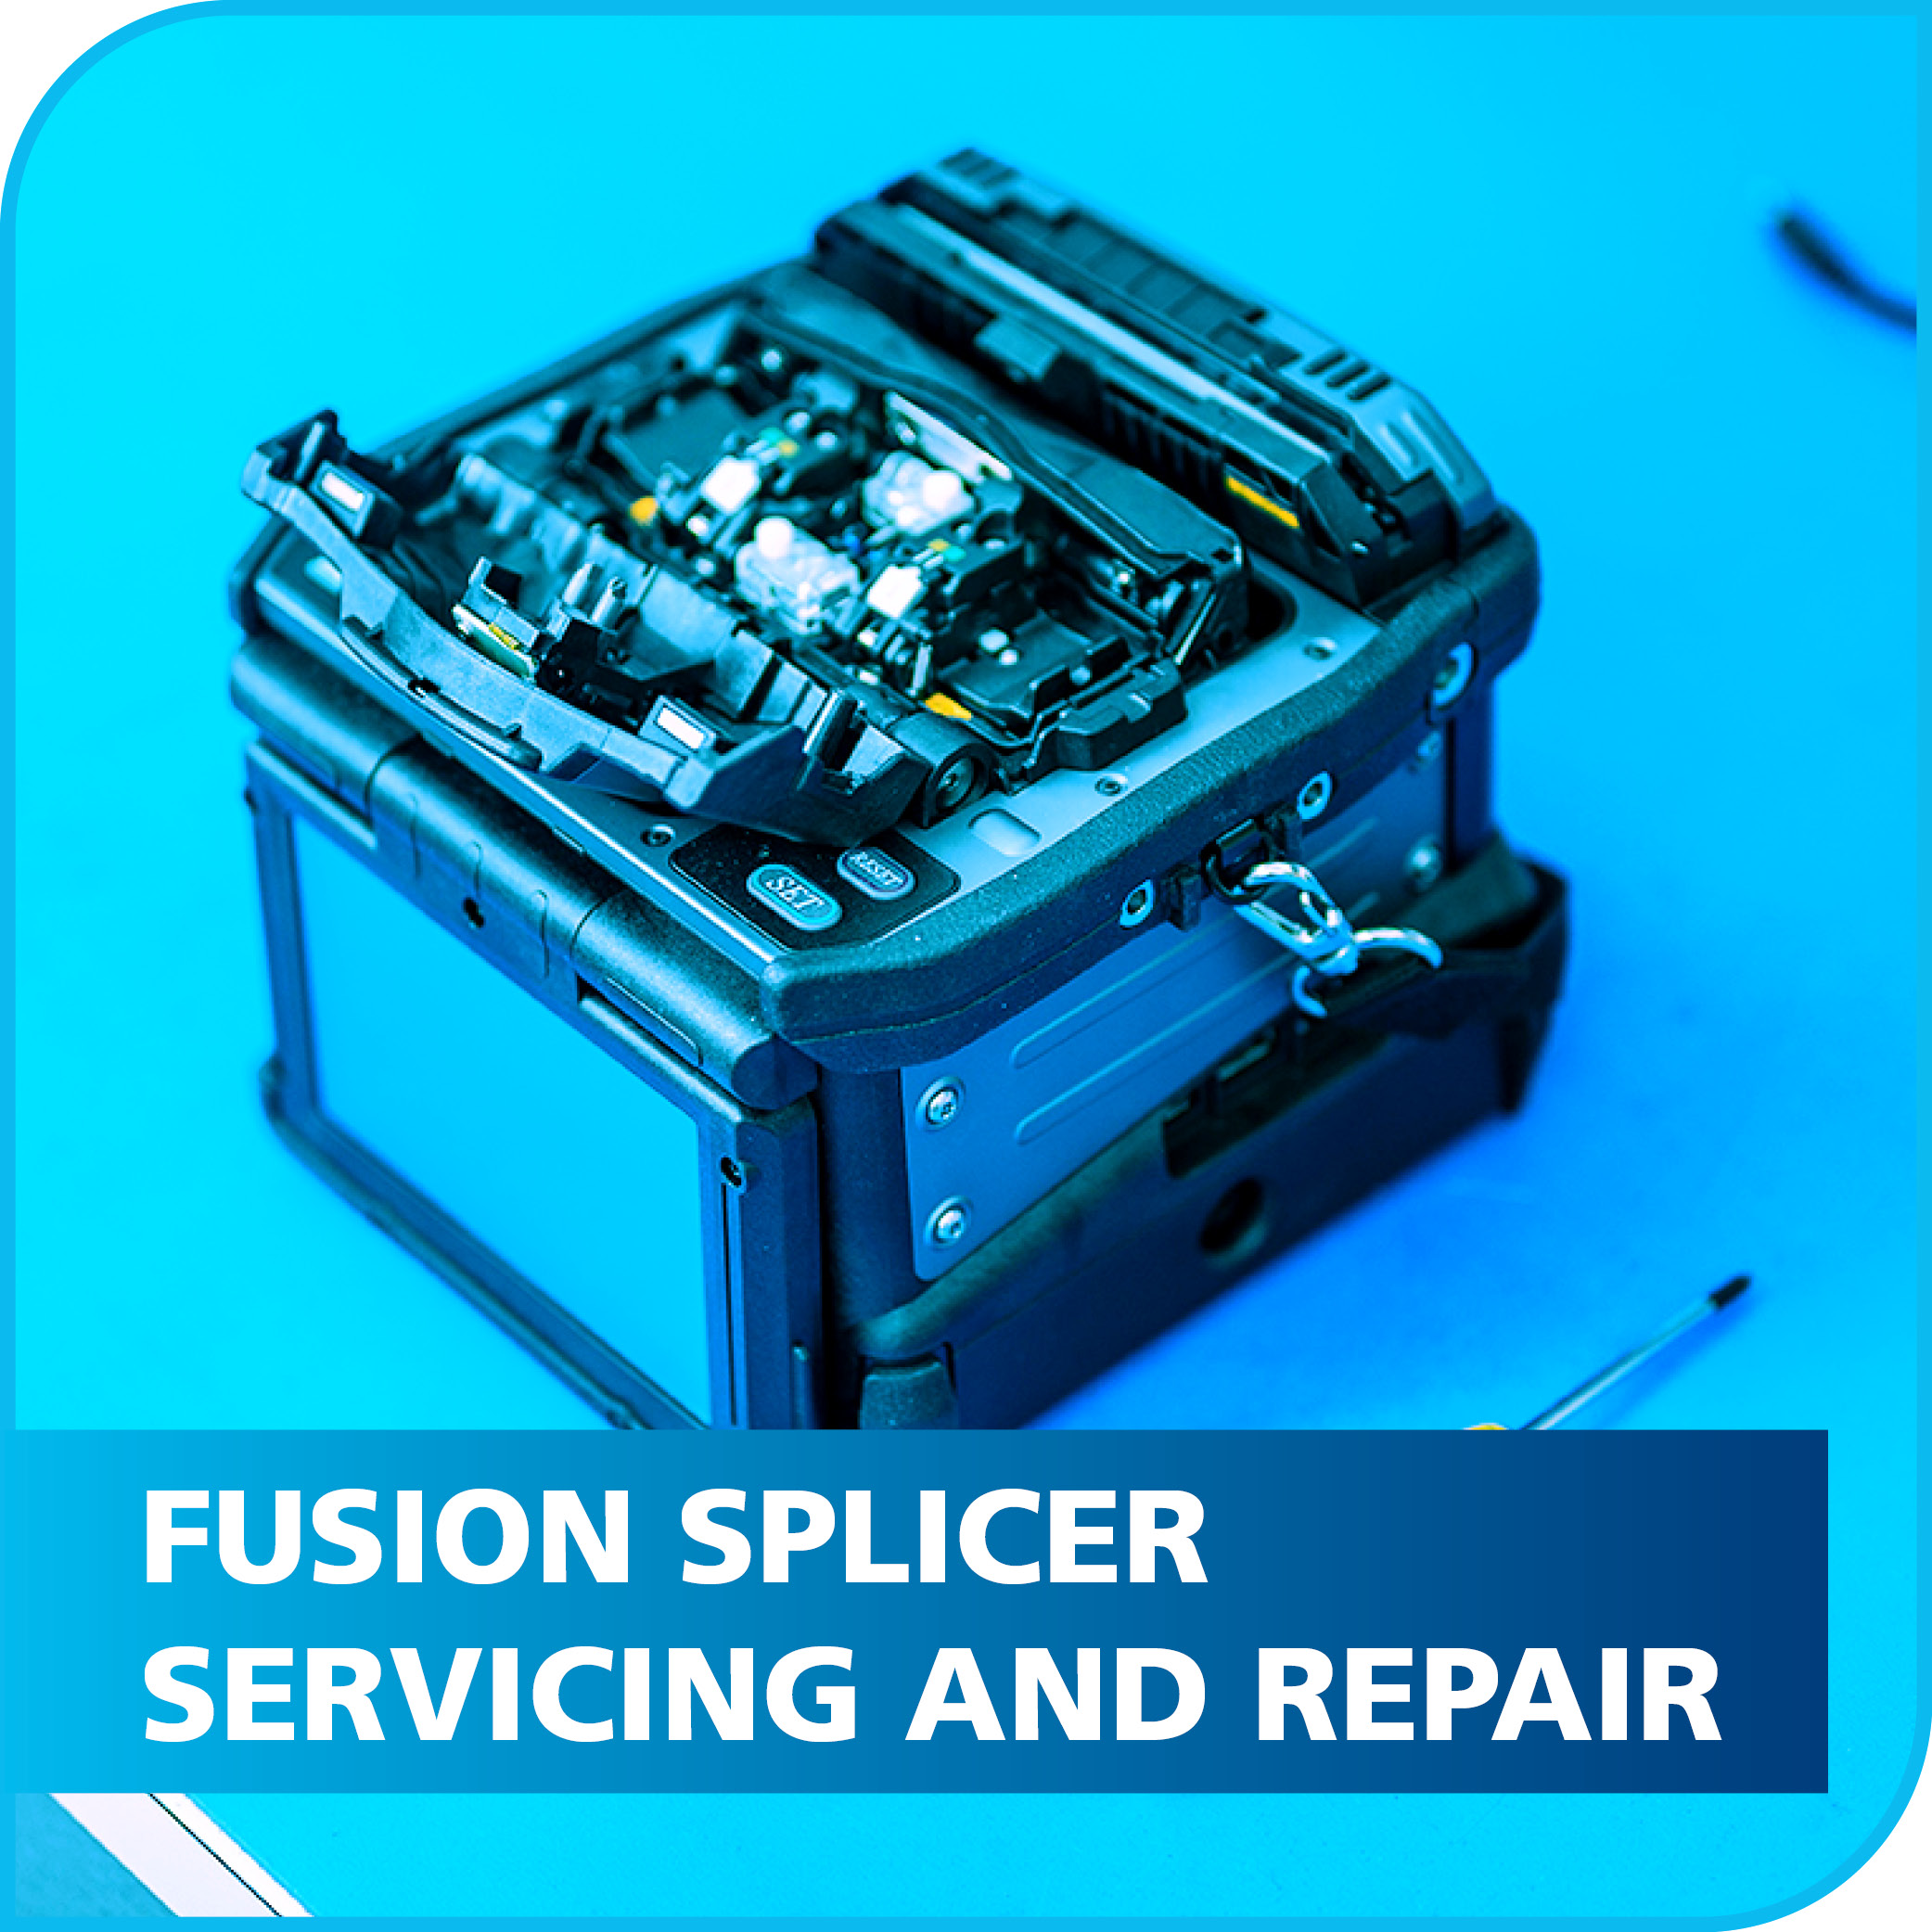 Splicer Servicing & Repair